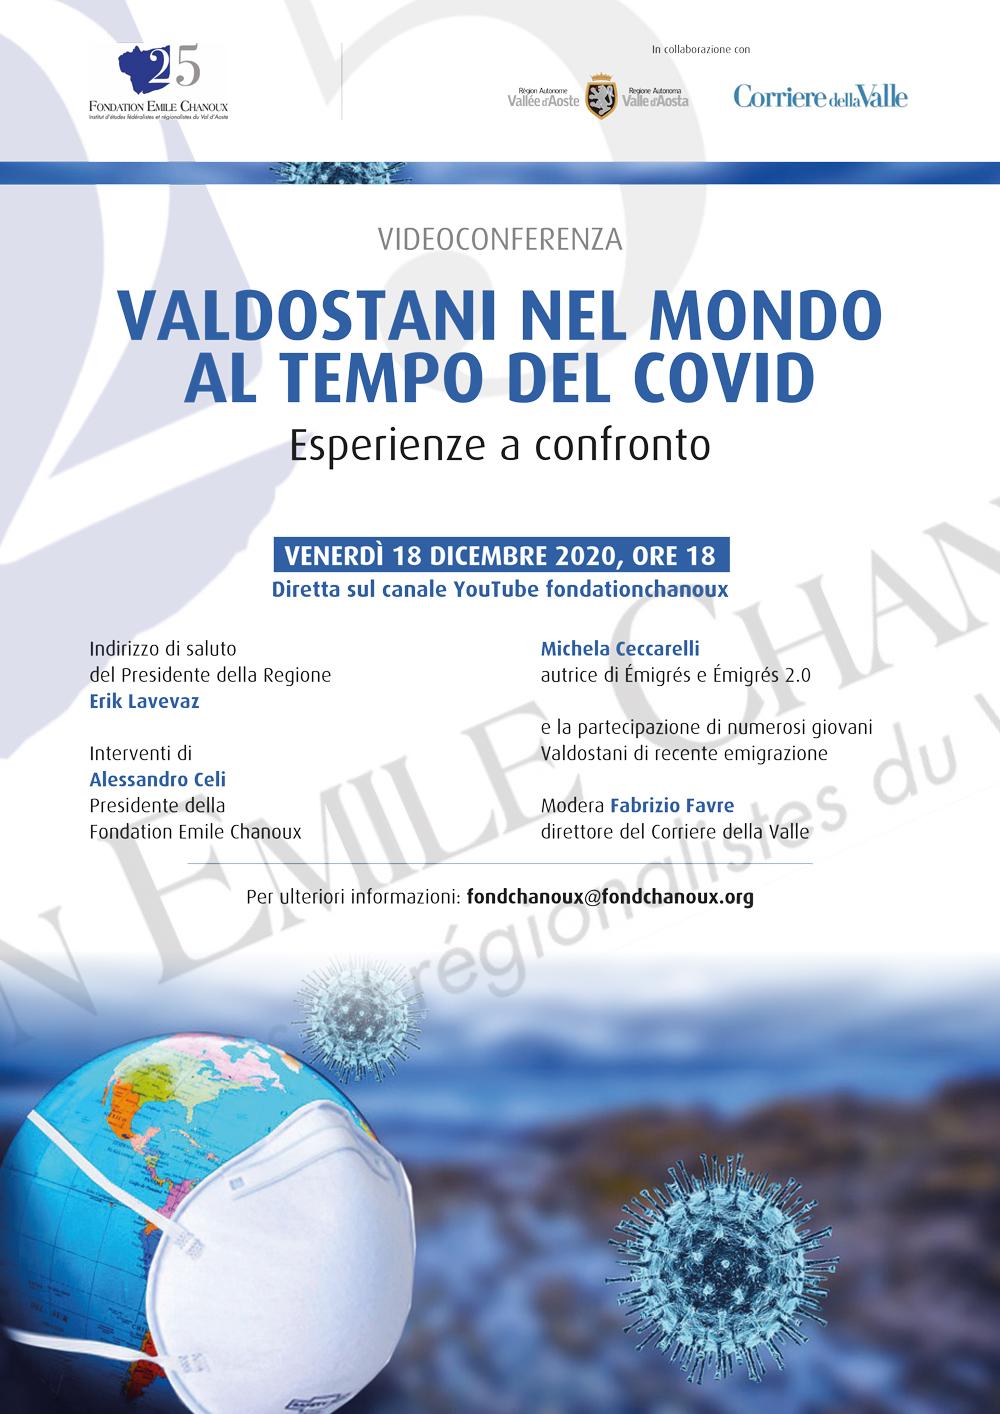 Un webinar sui Valdostani nel mondo durante il Covid